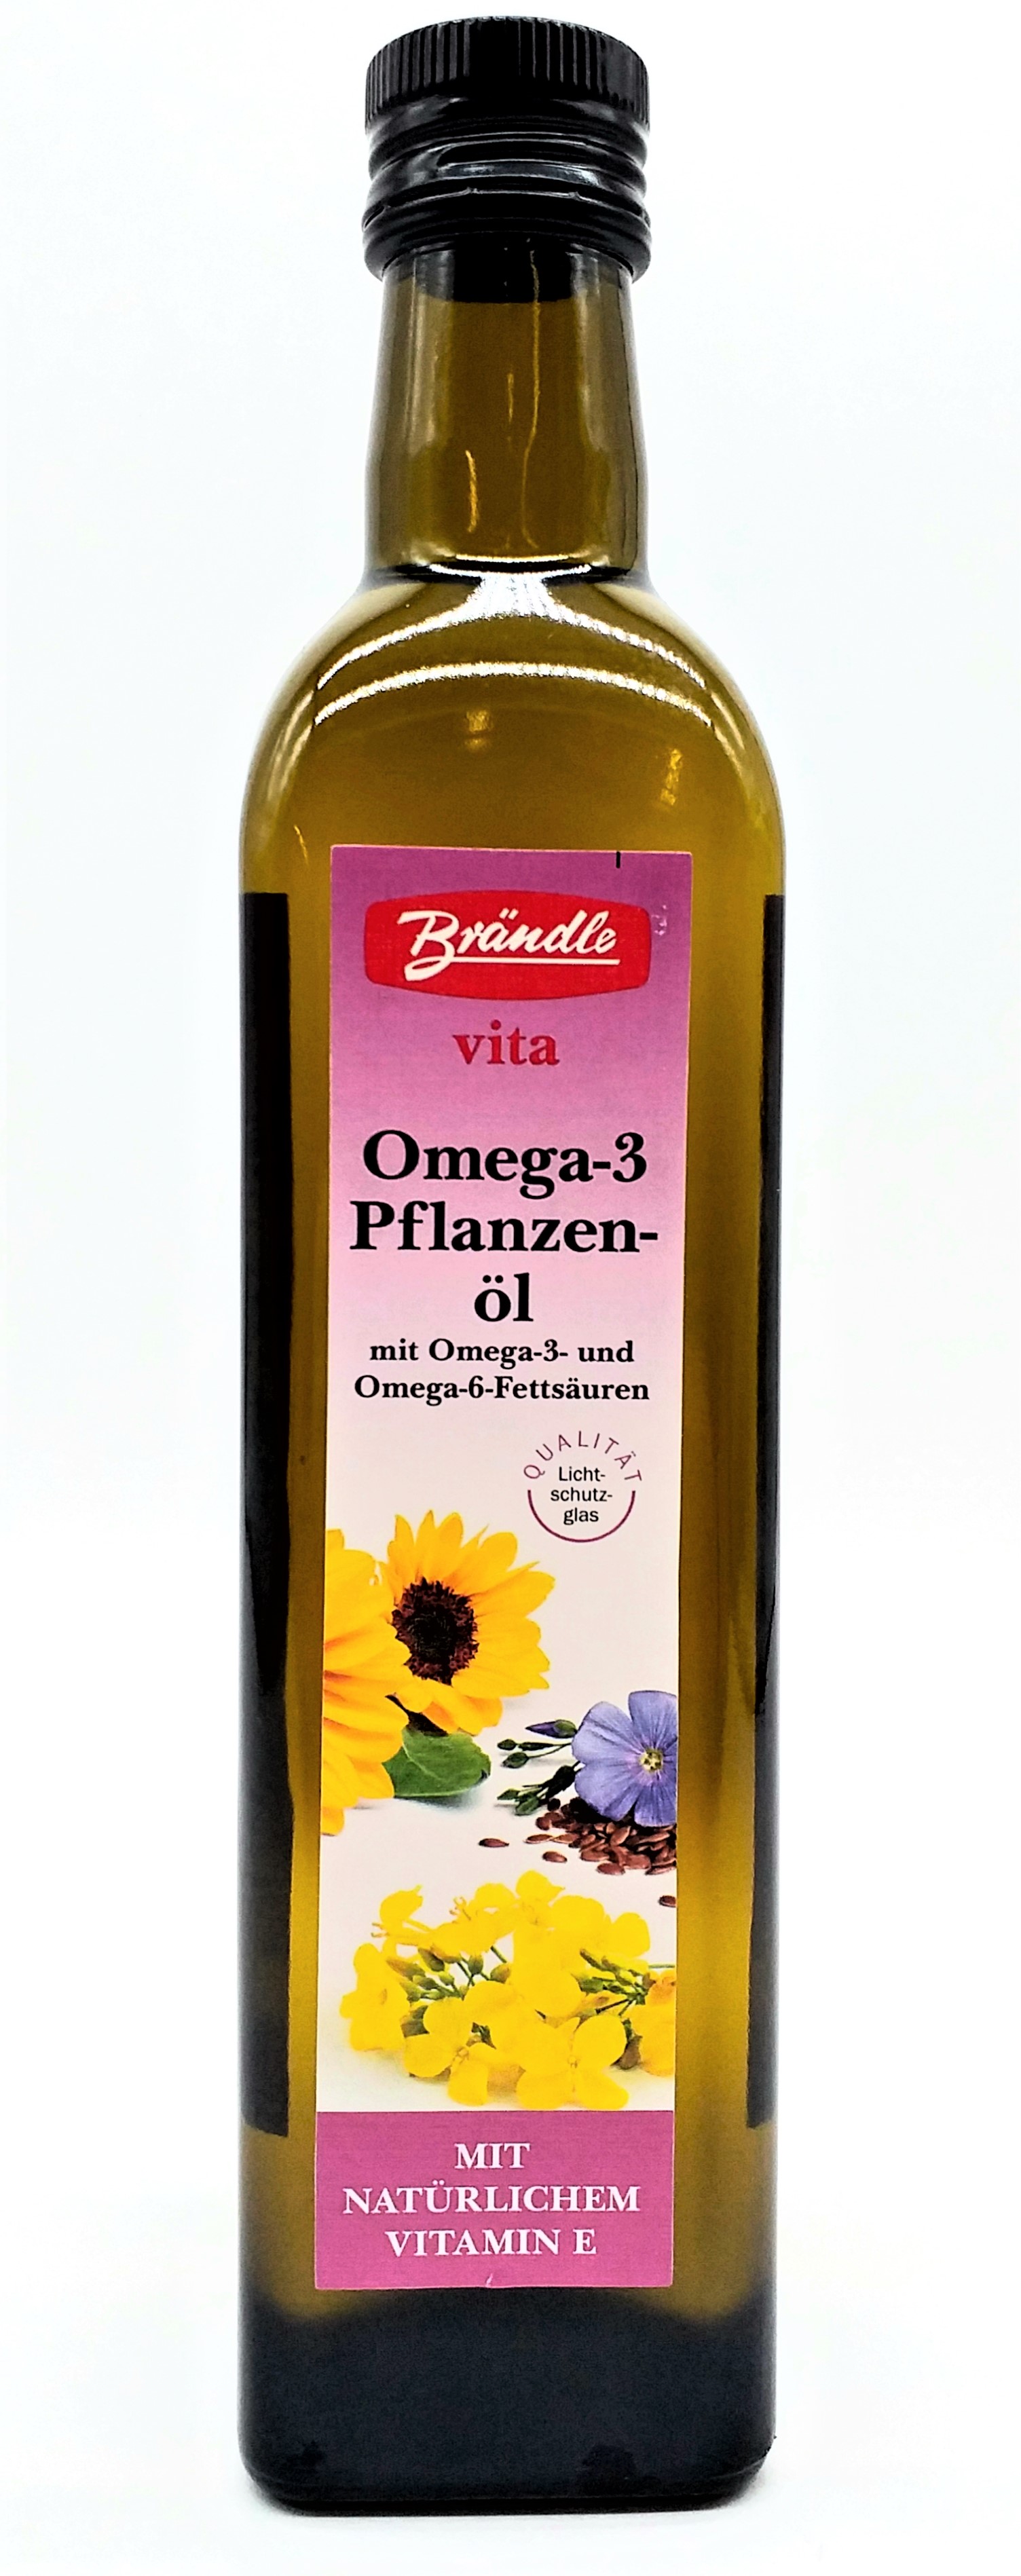 Brändle vita Omega3-Pflanzenöl 500ml